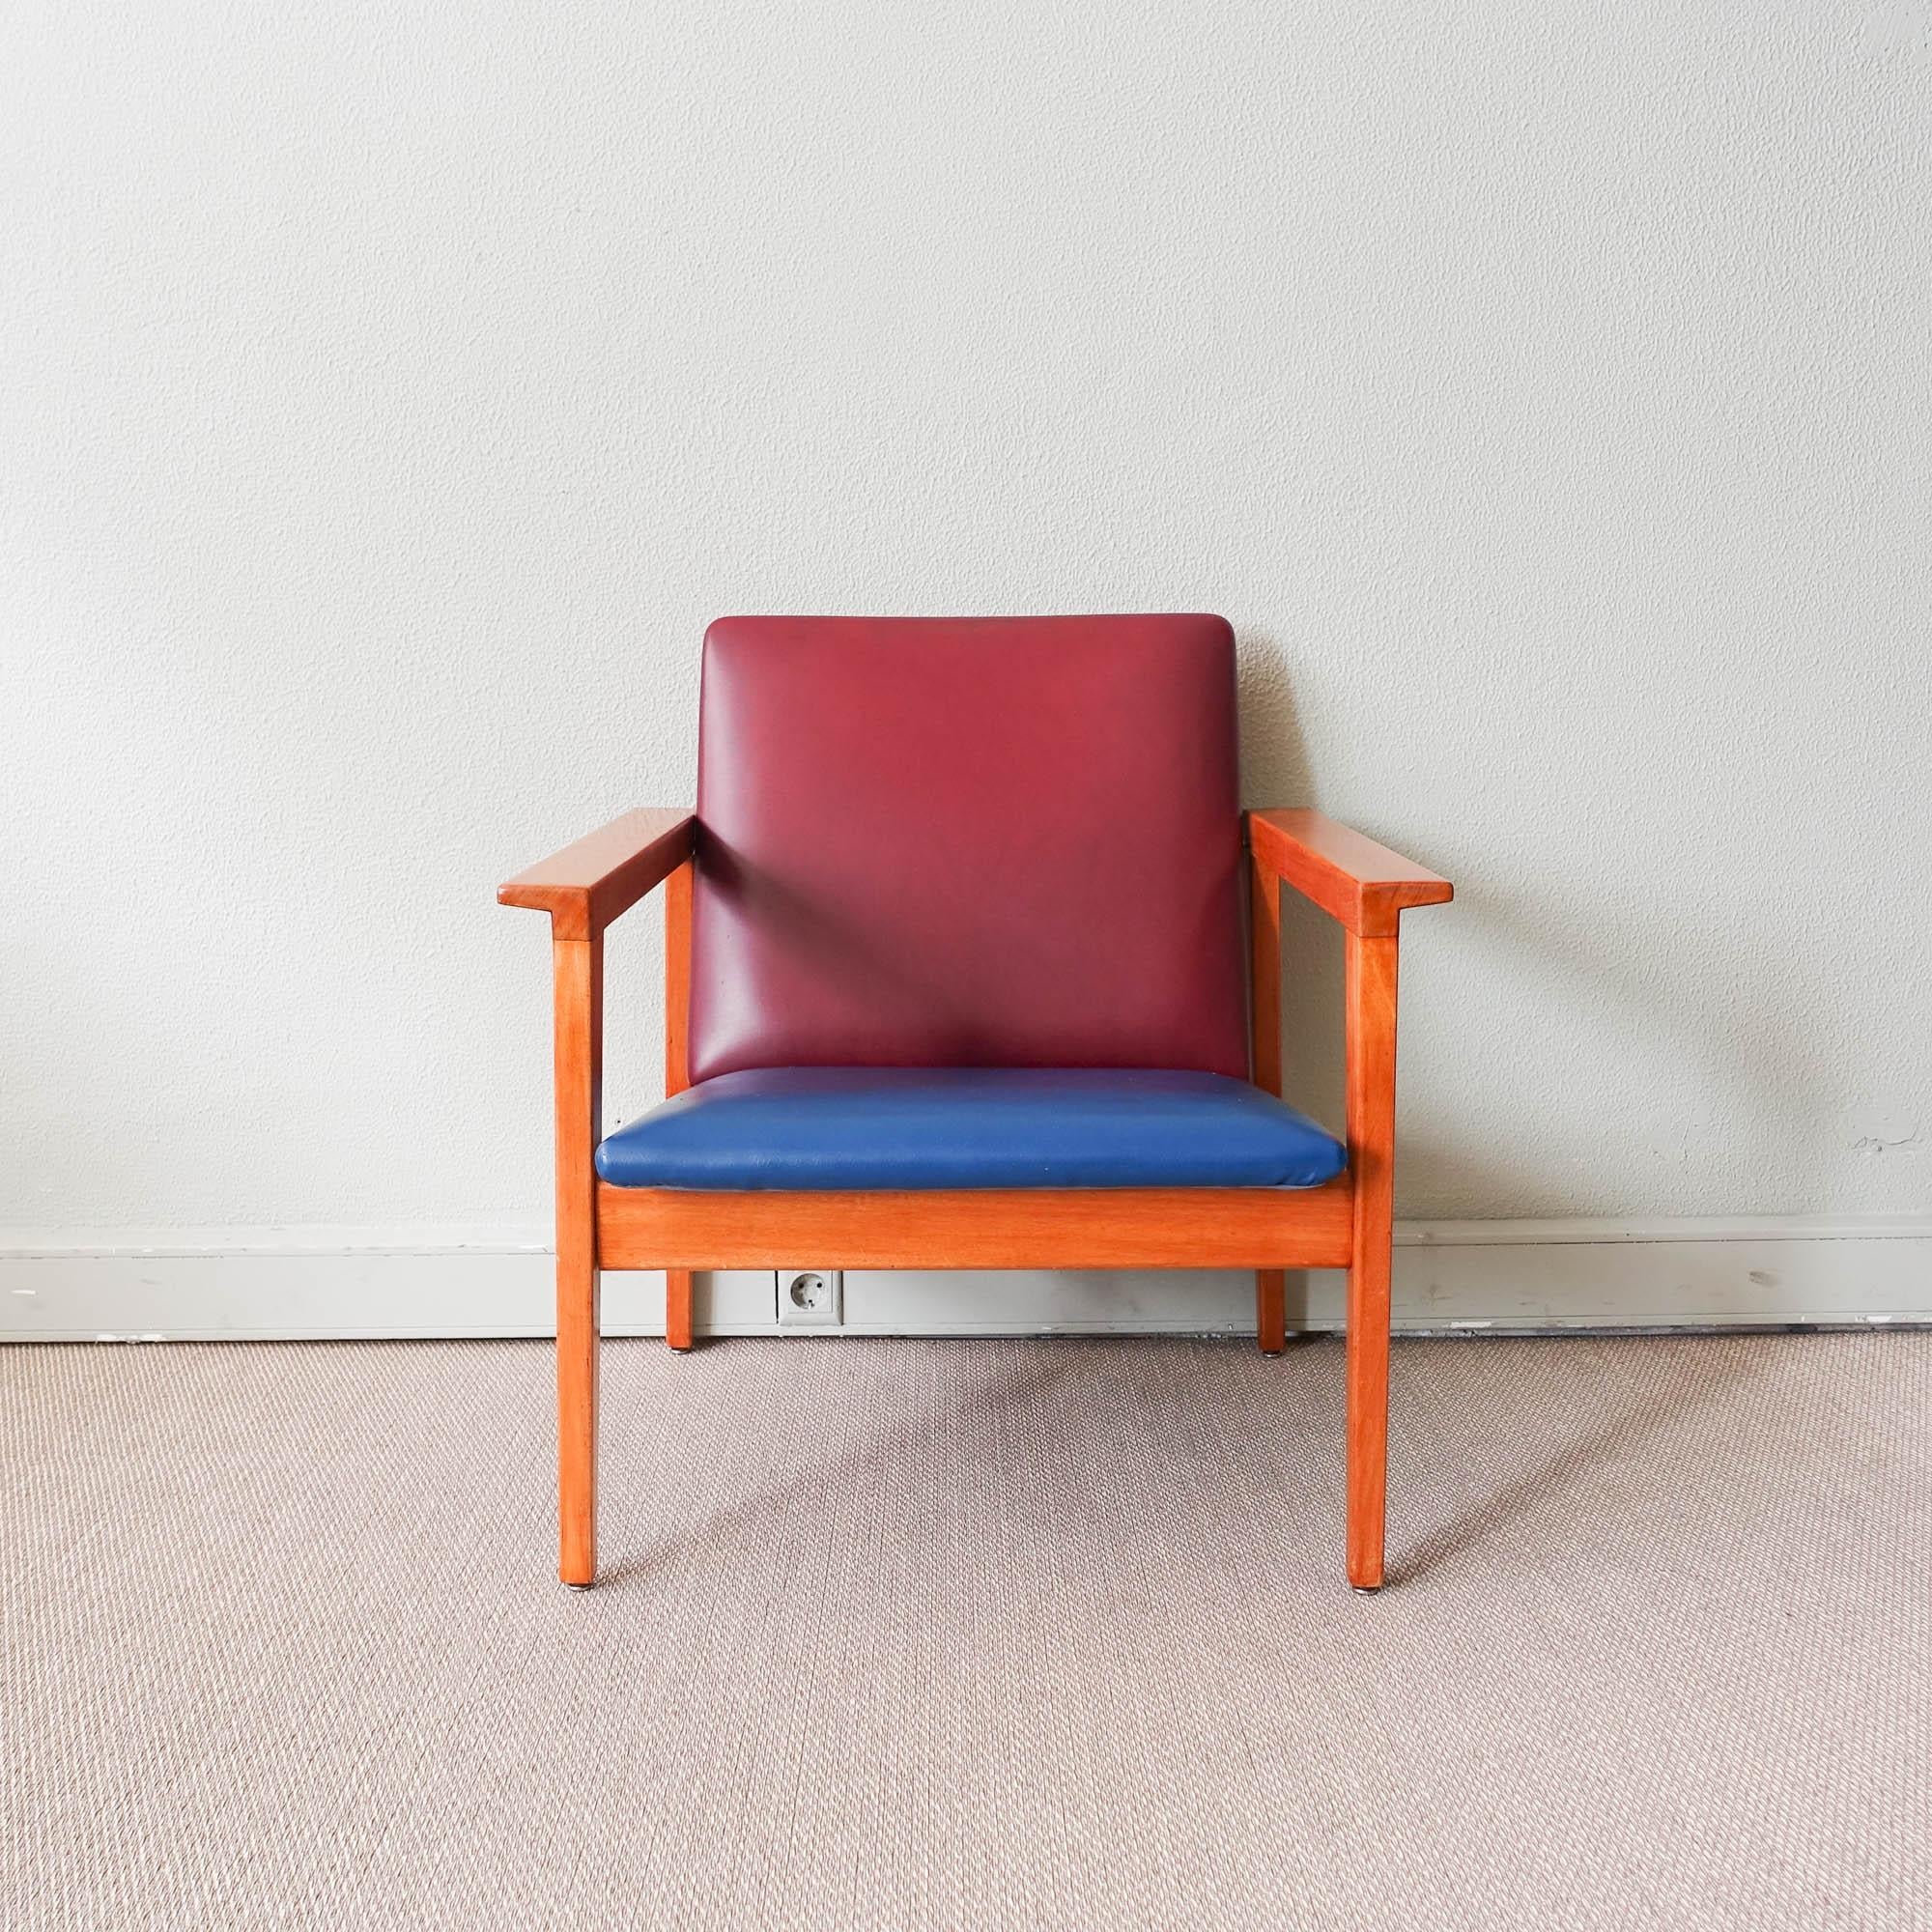 Jose' Espinho war einer der erstaunlichsten portugiesischen Designer des XX. Jahrhunderts.
Der Sessel Model Prefa für Move'is Olaio ist eines der größten Werke von Jose' Espinho. Die Rückenlehne des Stuhls ist von der Struktur losgelöst und wird